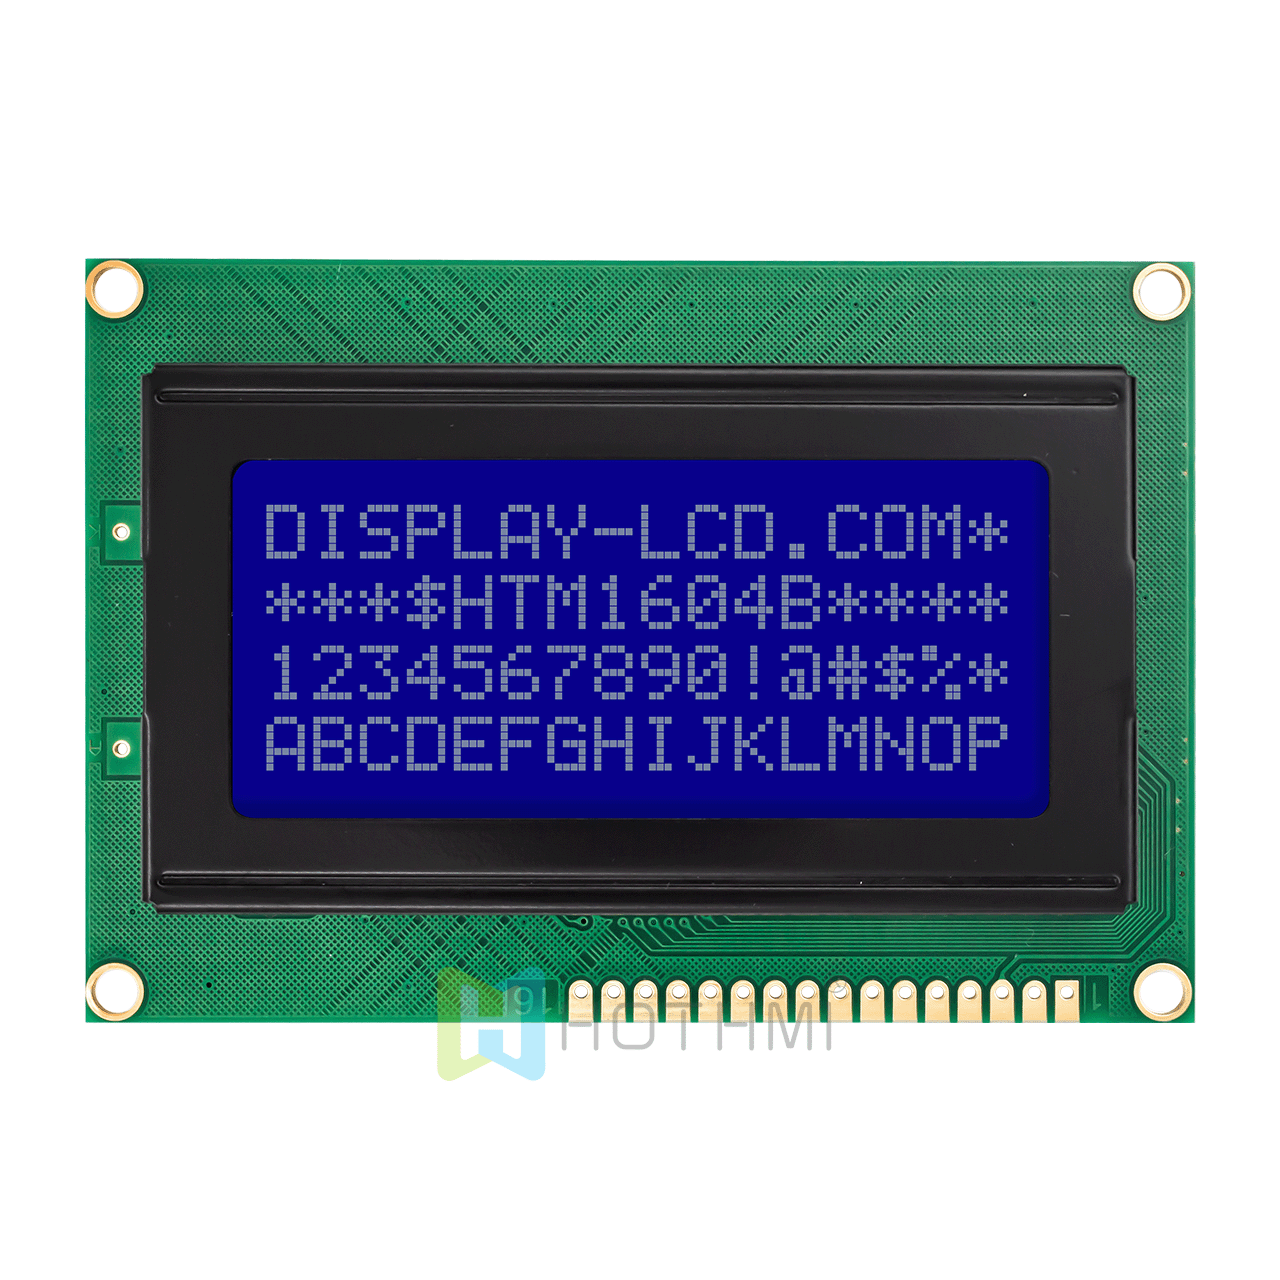 4x16 字符 LCD模组 | STN(-) 白色侧背光单色显示屏 | Arduino | MCU接口 | ST7066U控制器| 全透反射| 蓝底白字